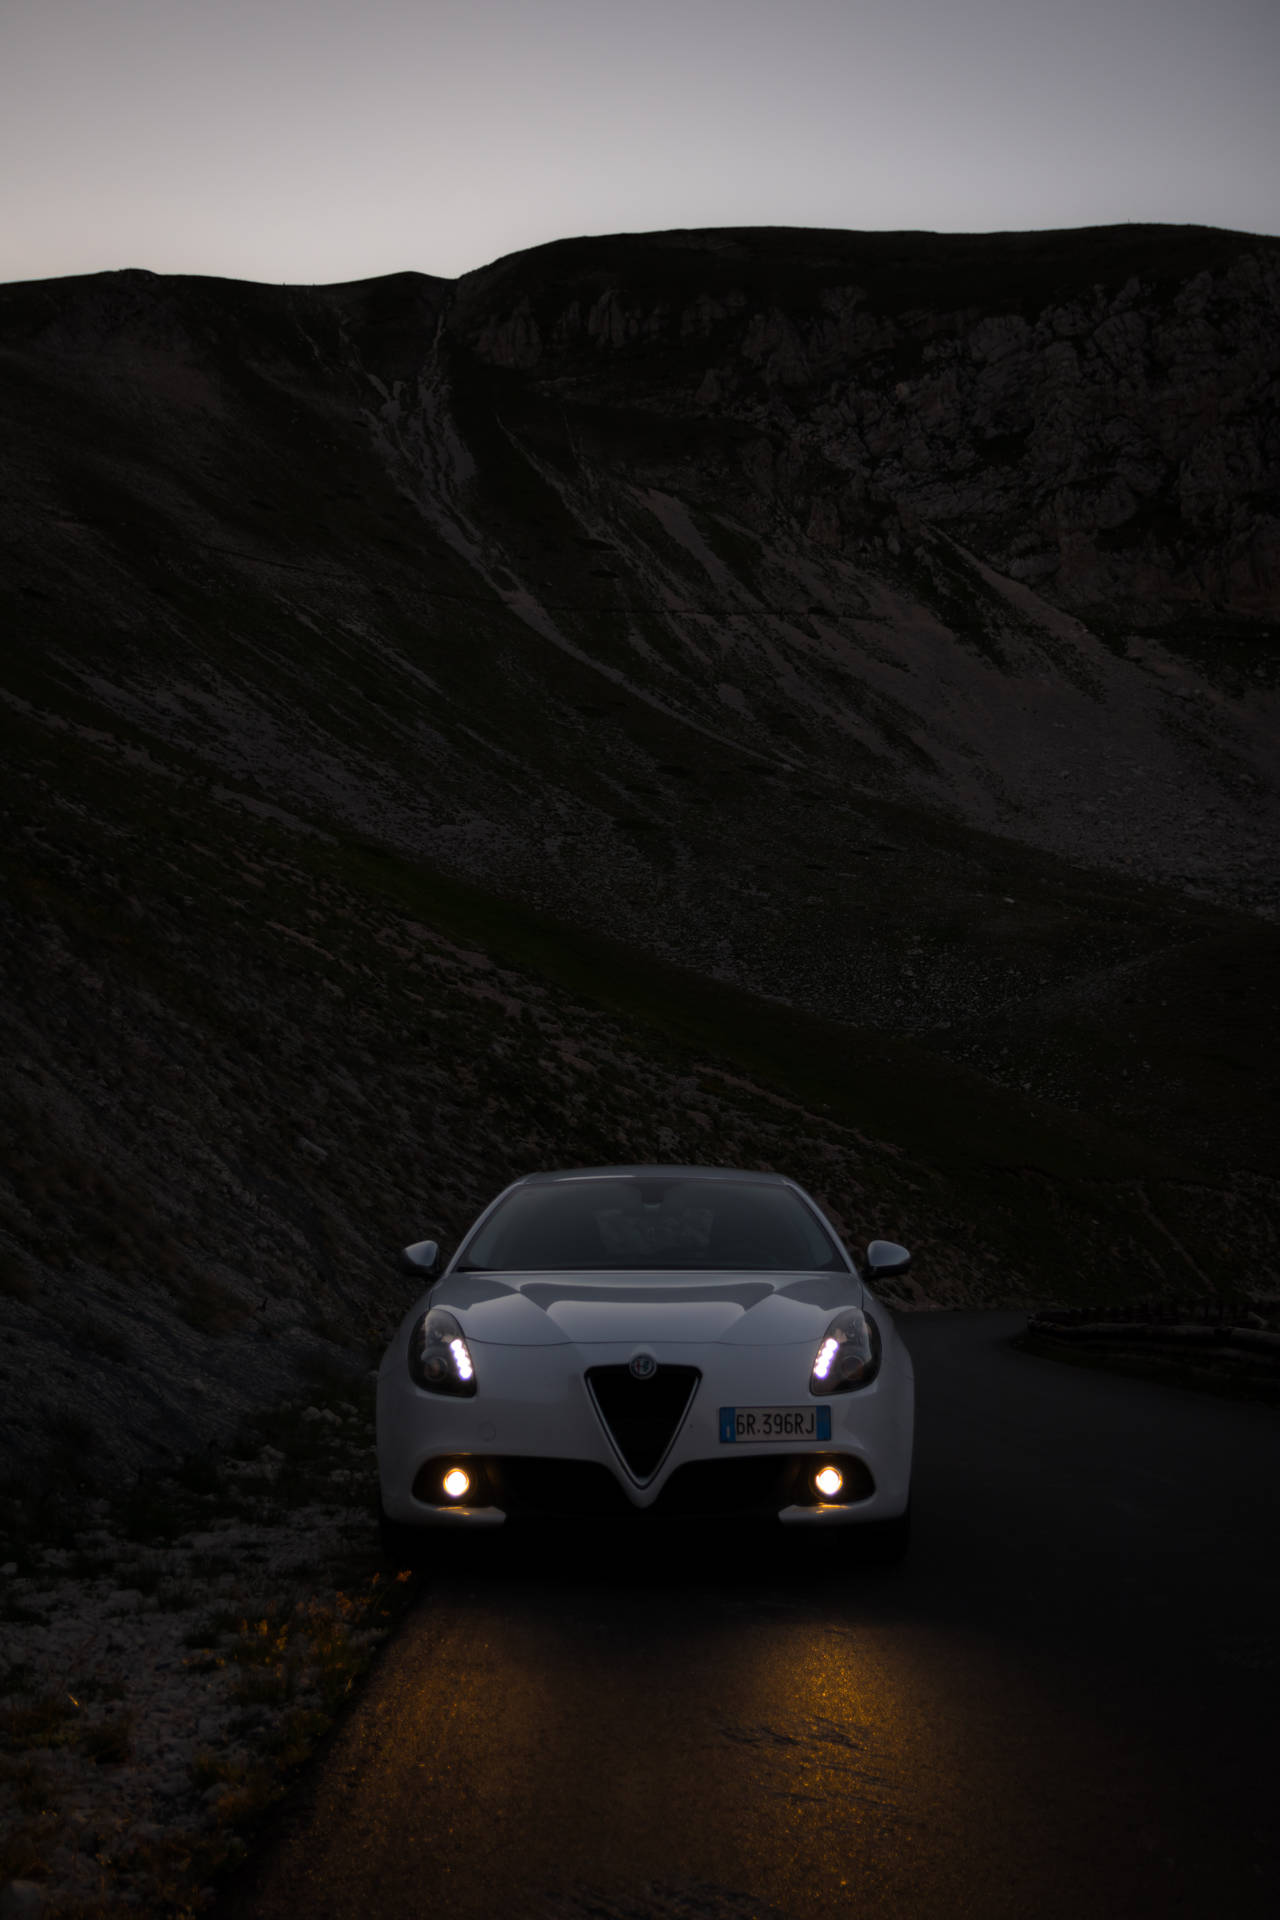 Alfa Romeo Giulietta Illuminated at Night Wallpaper